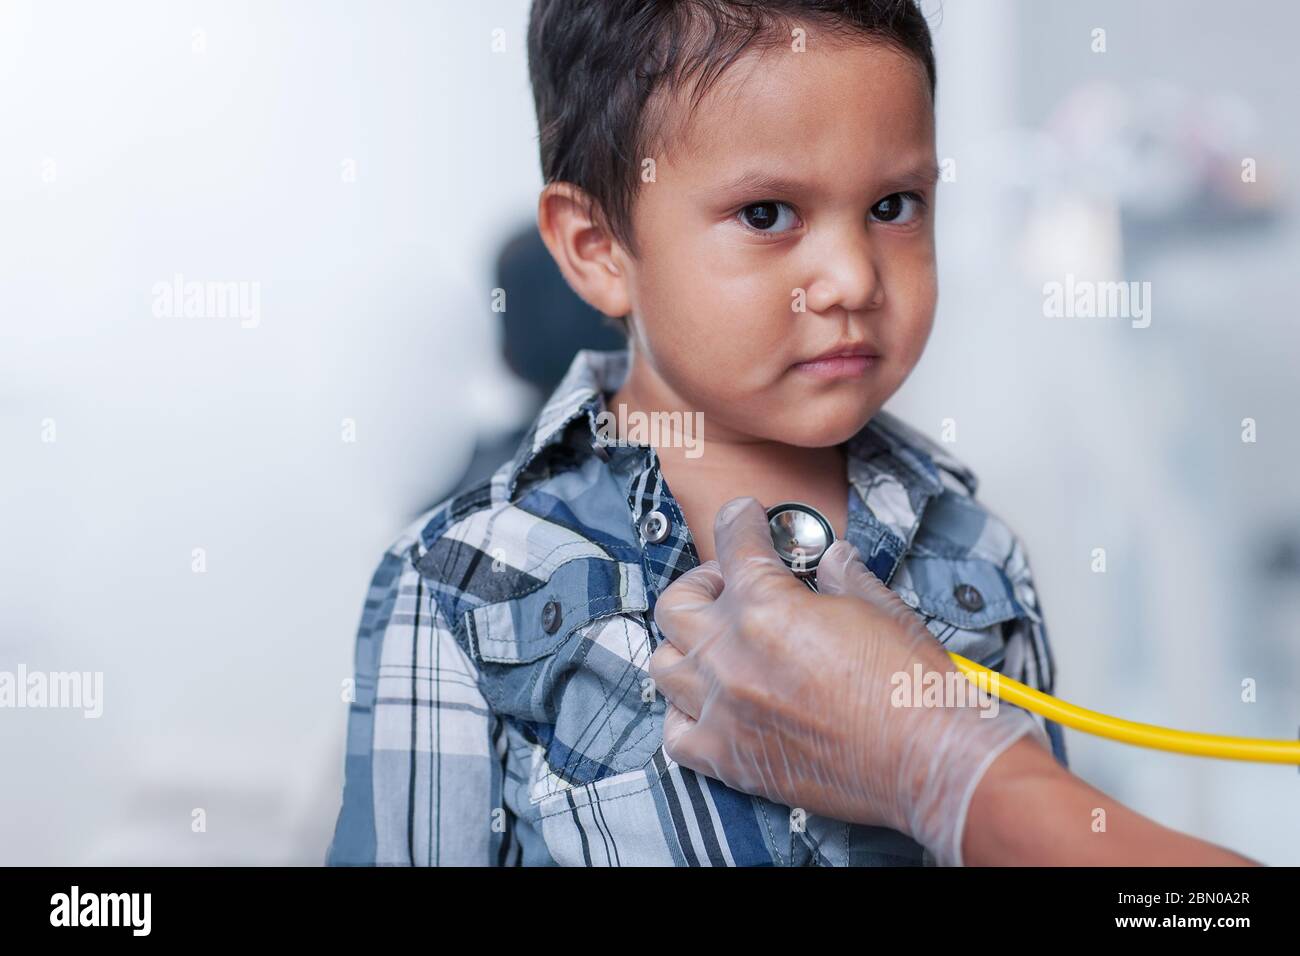 Un niño en edad preescolar que recibe una prueba de detección del corazón, usando un estetoscopio en el pecho con una camisa de abajo con botones. Foto de stock